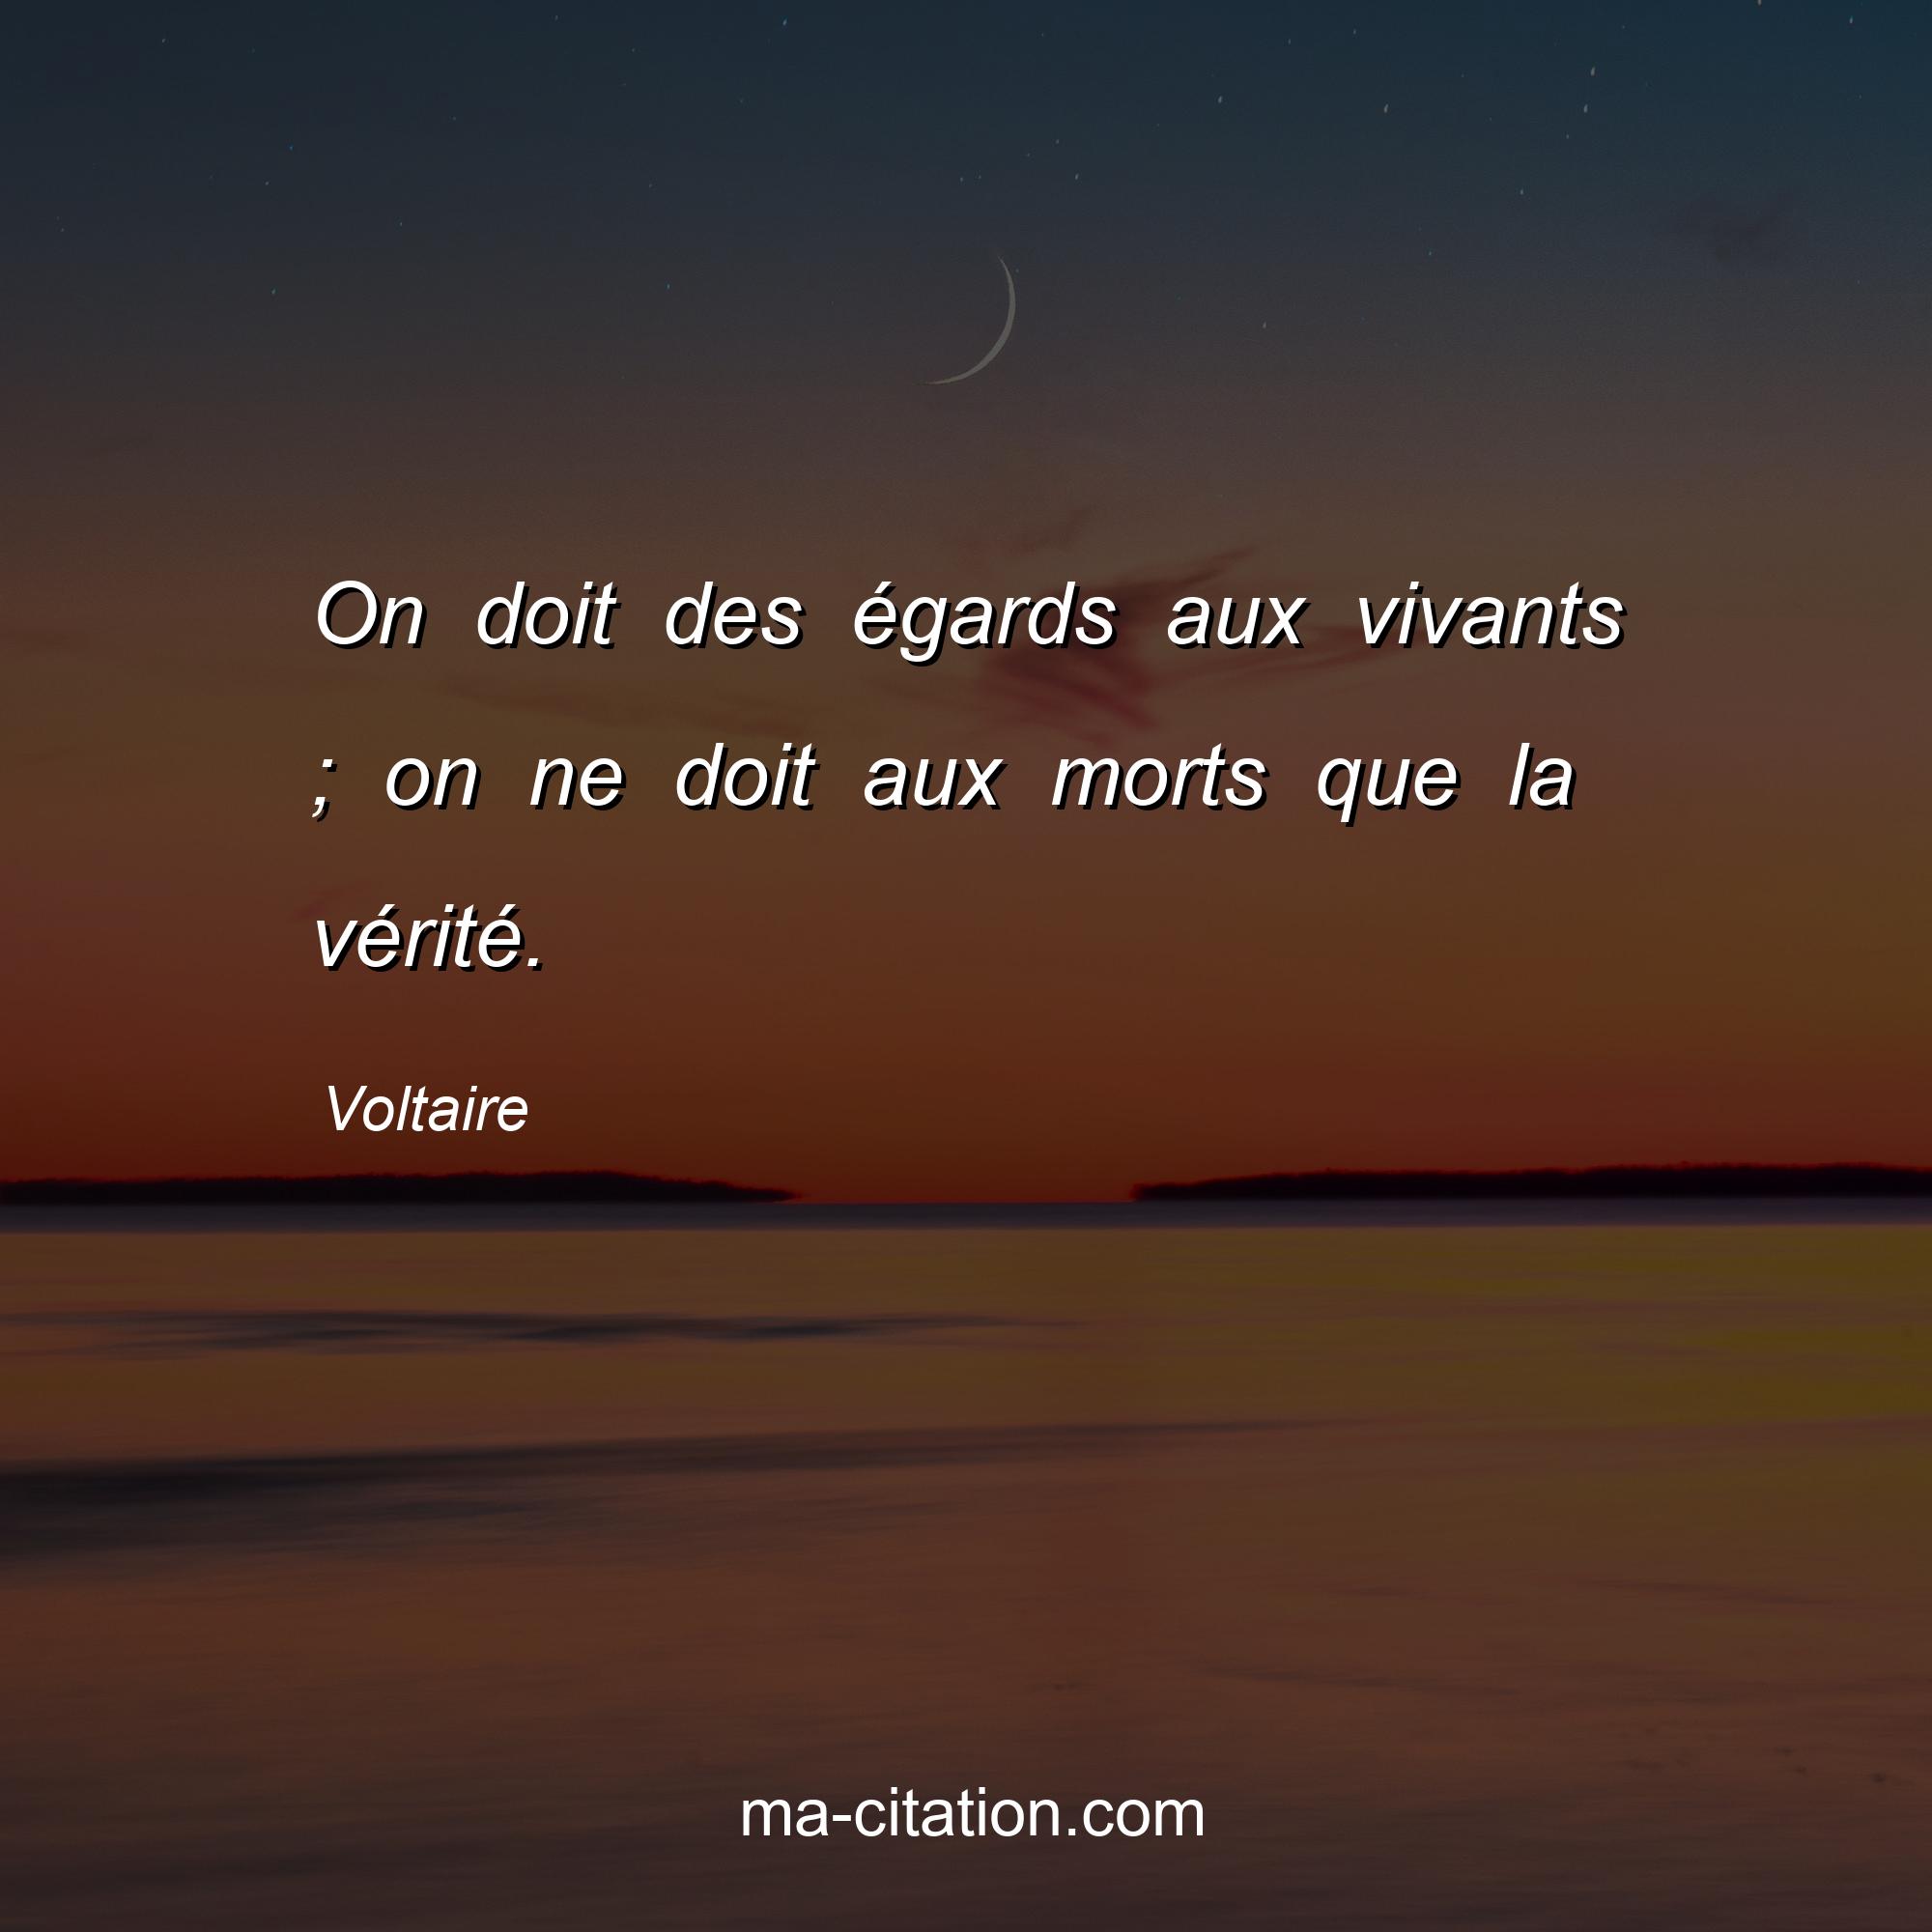 Voltaire : On doit des égards aux vivants ; on ne doit aux morts que la vérité.